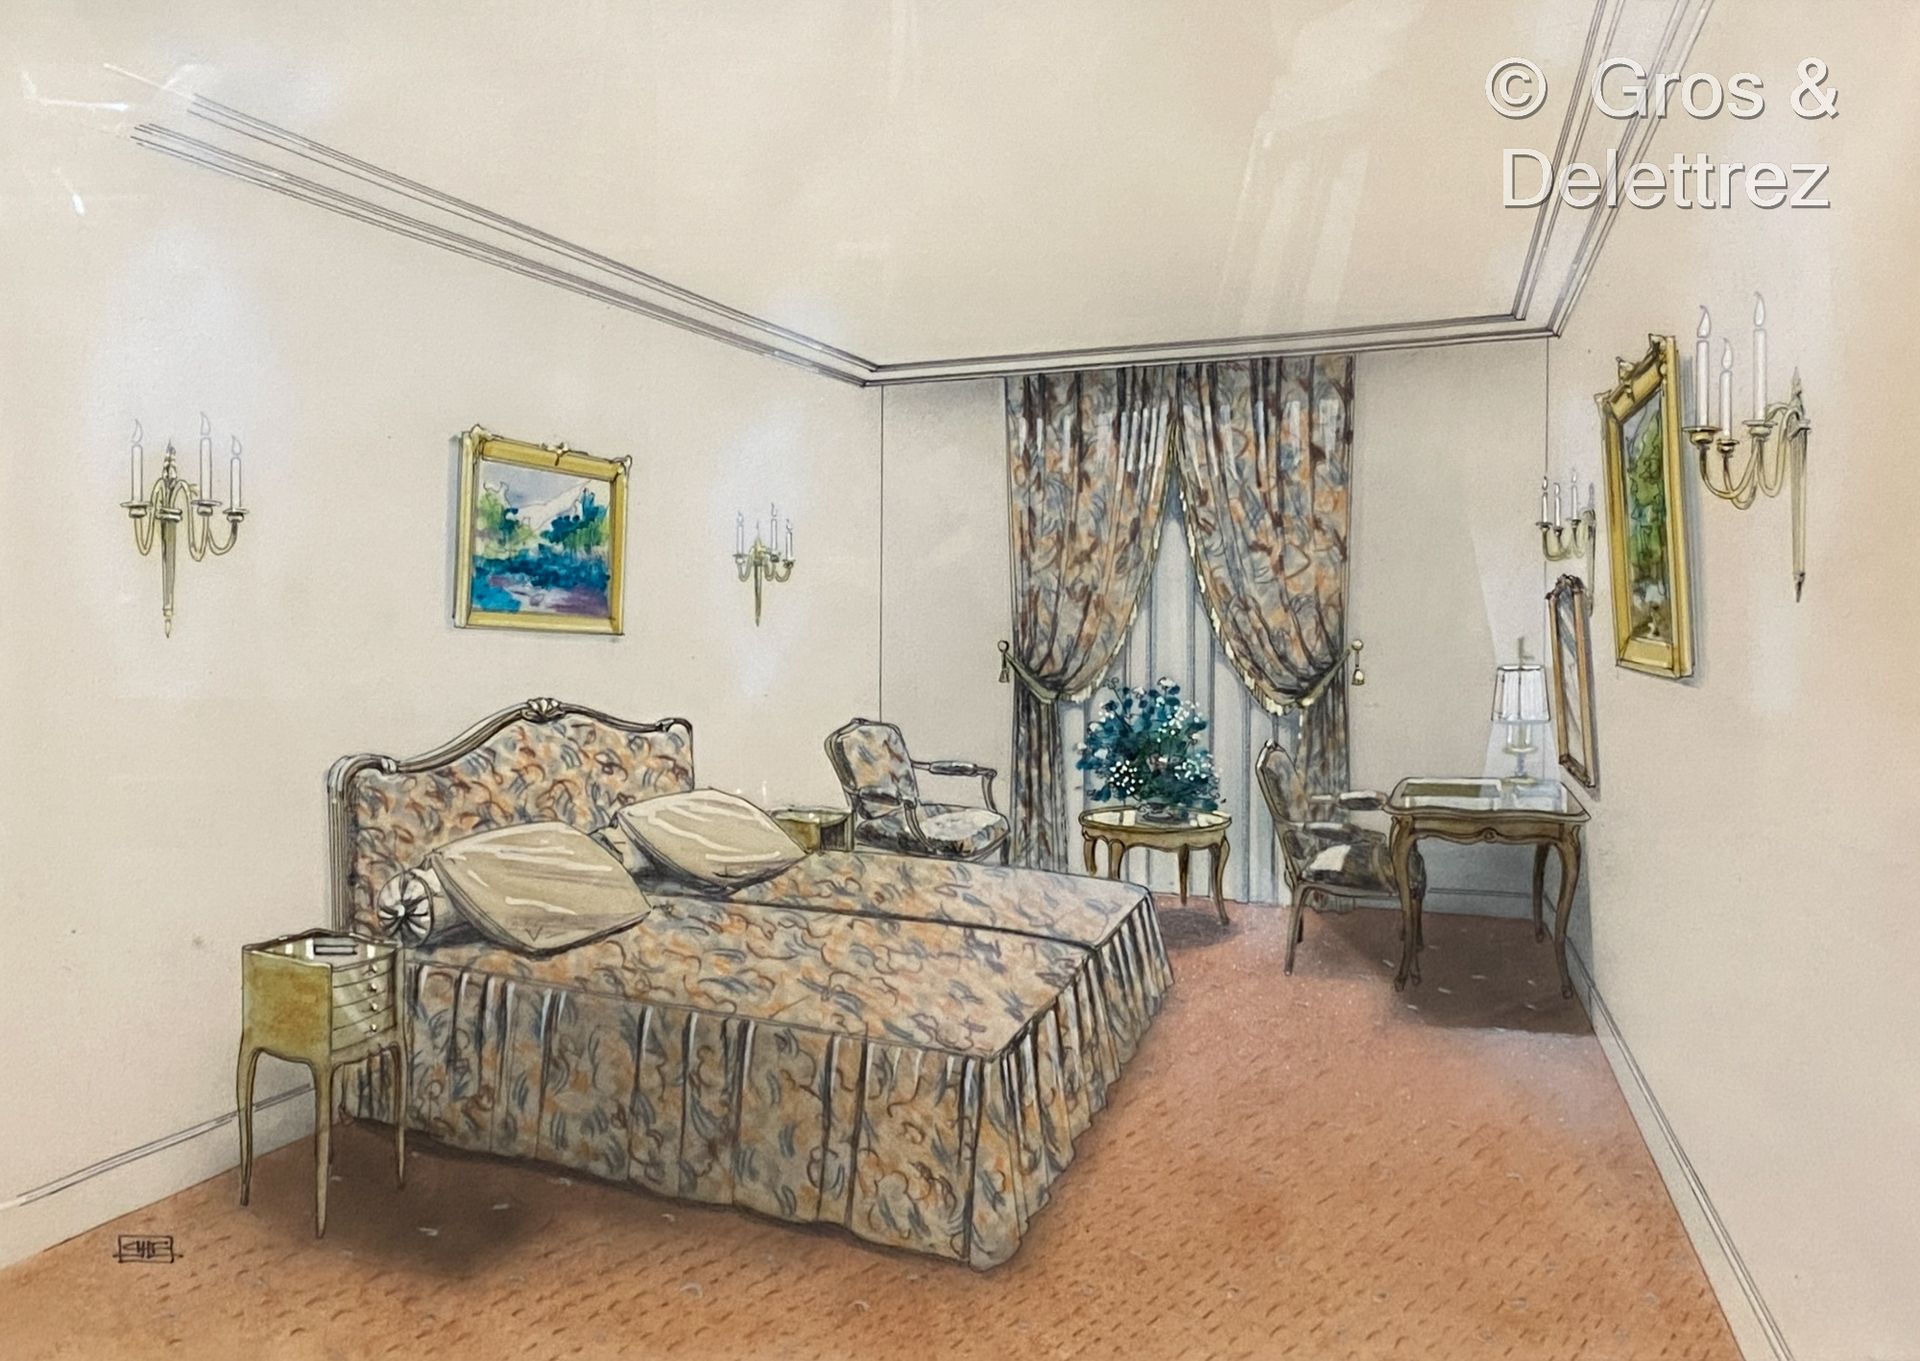 Null (E) Progetto di una camera d'albergo in stile Luigi XV 

Penna a feltro e g&hellip;